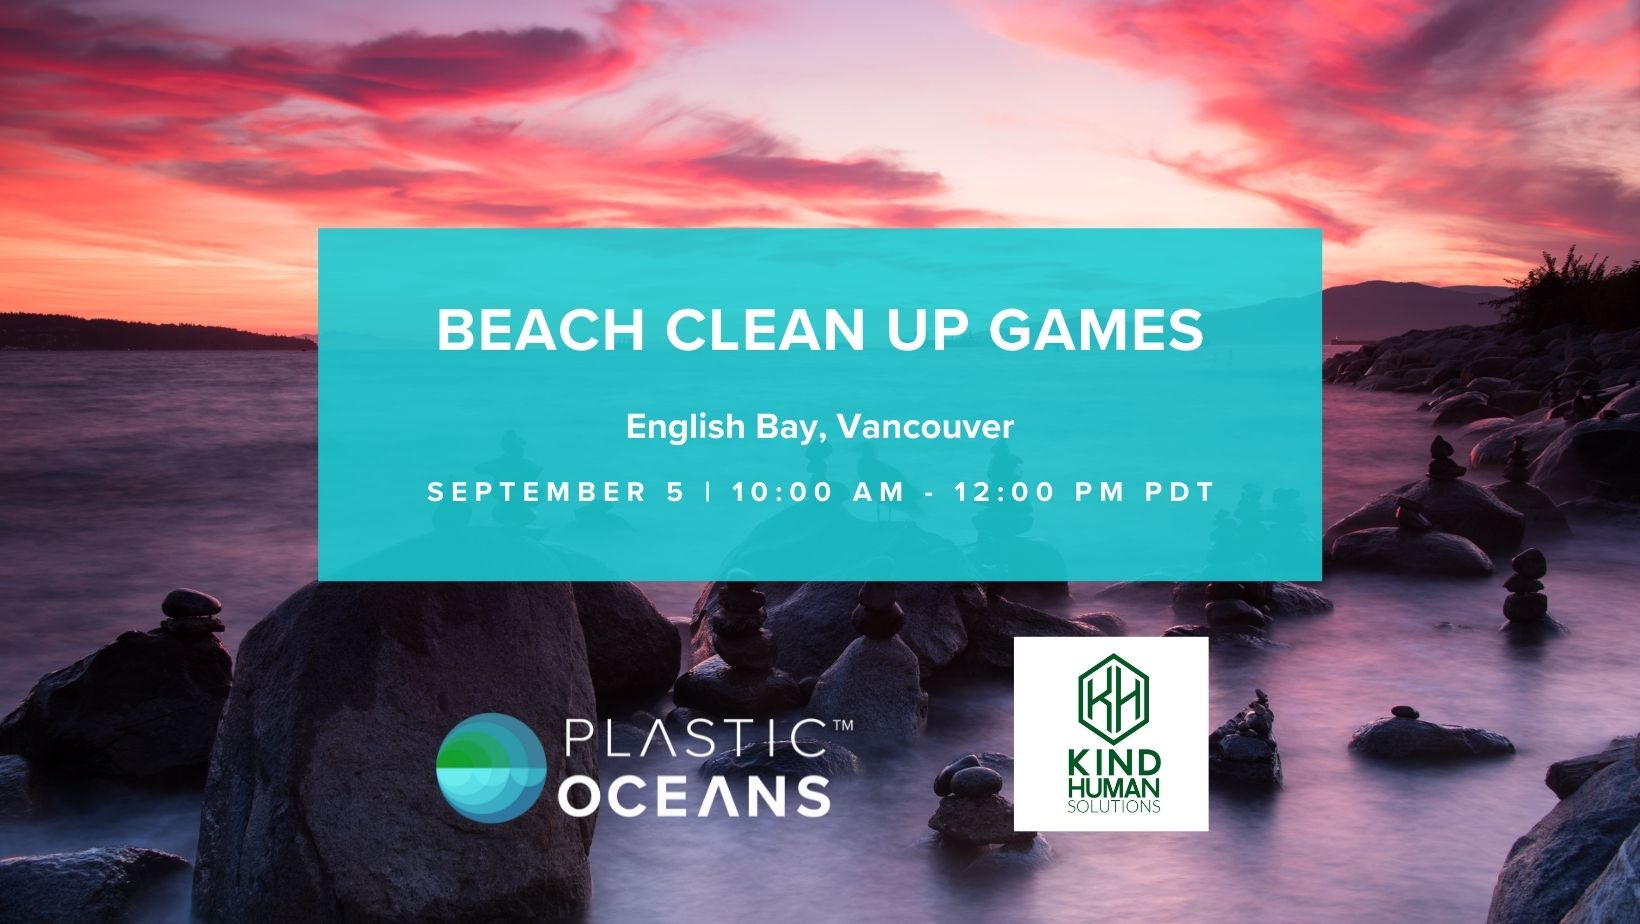 Beach Clean Up Games